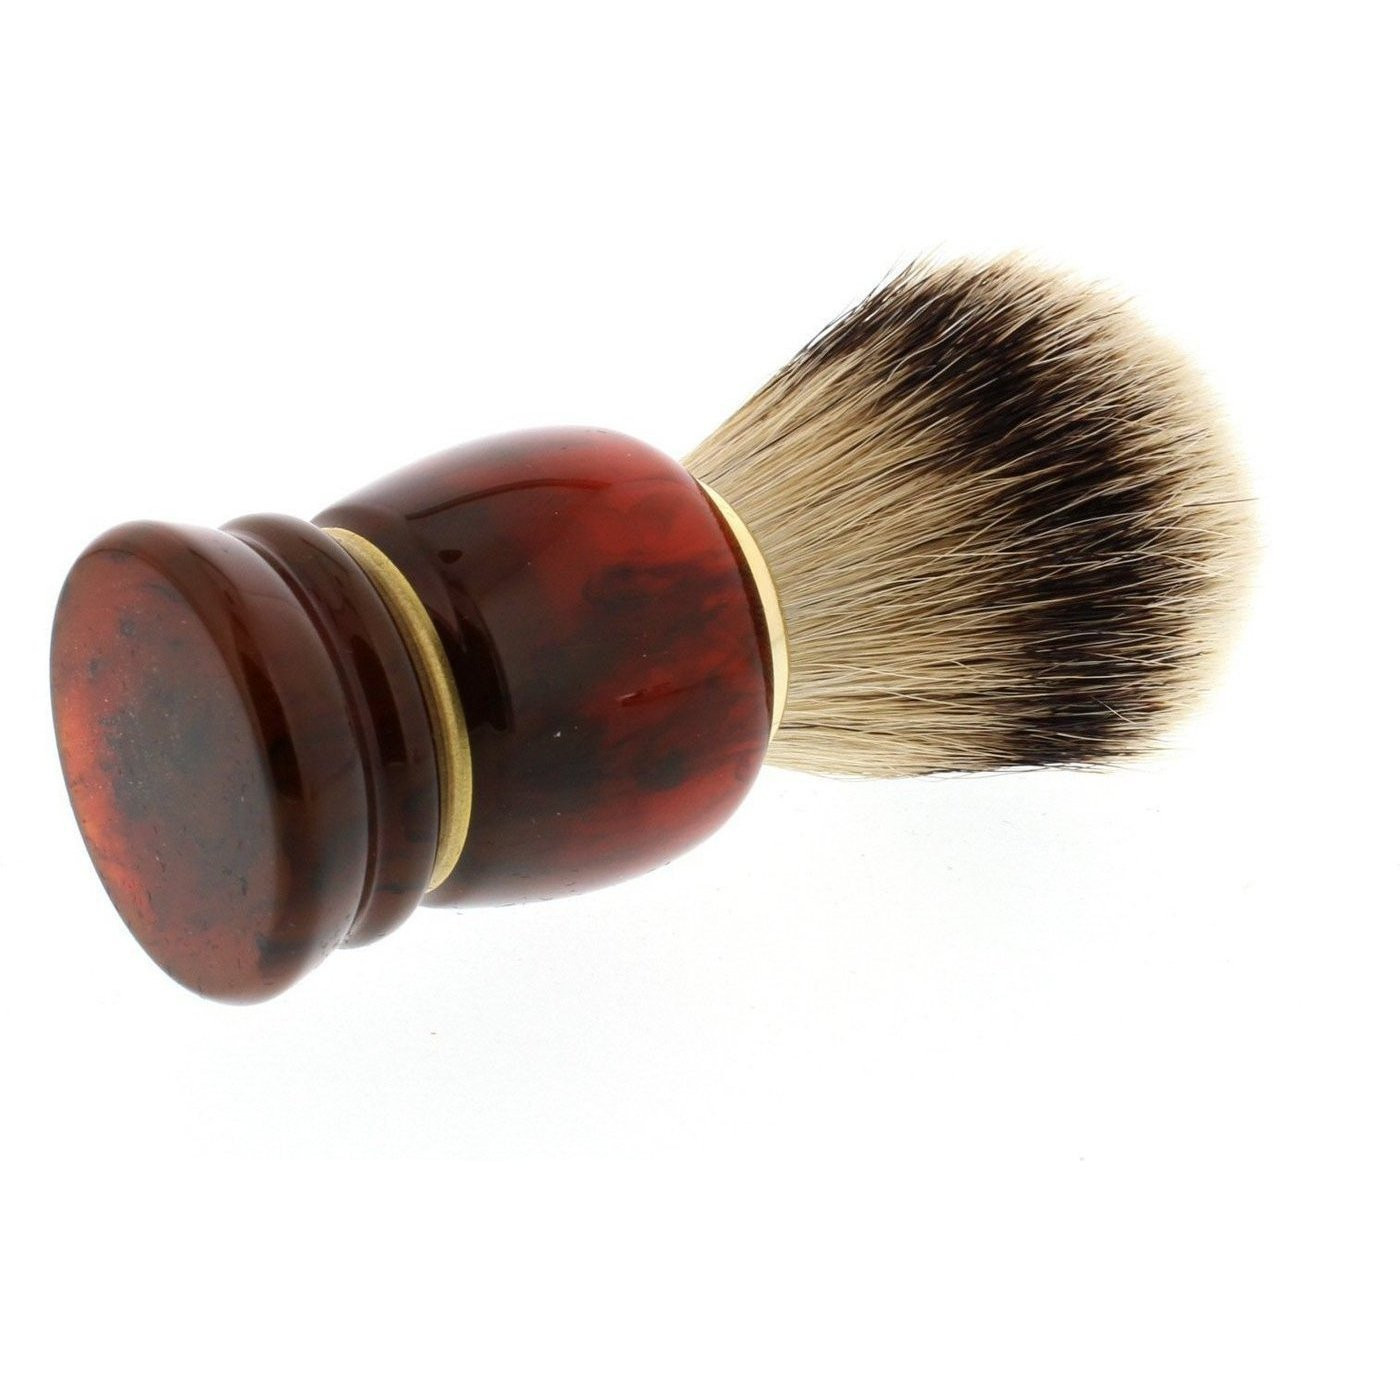 Product image 4 for Omega 639 Silvertip Badger Shaving Brush